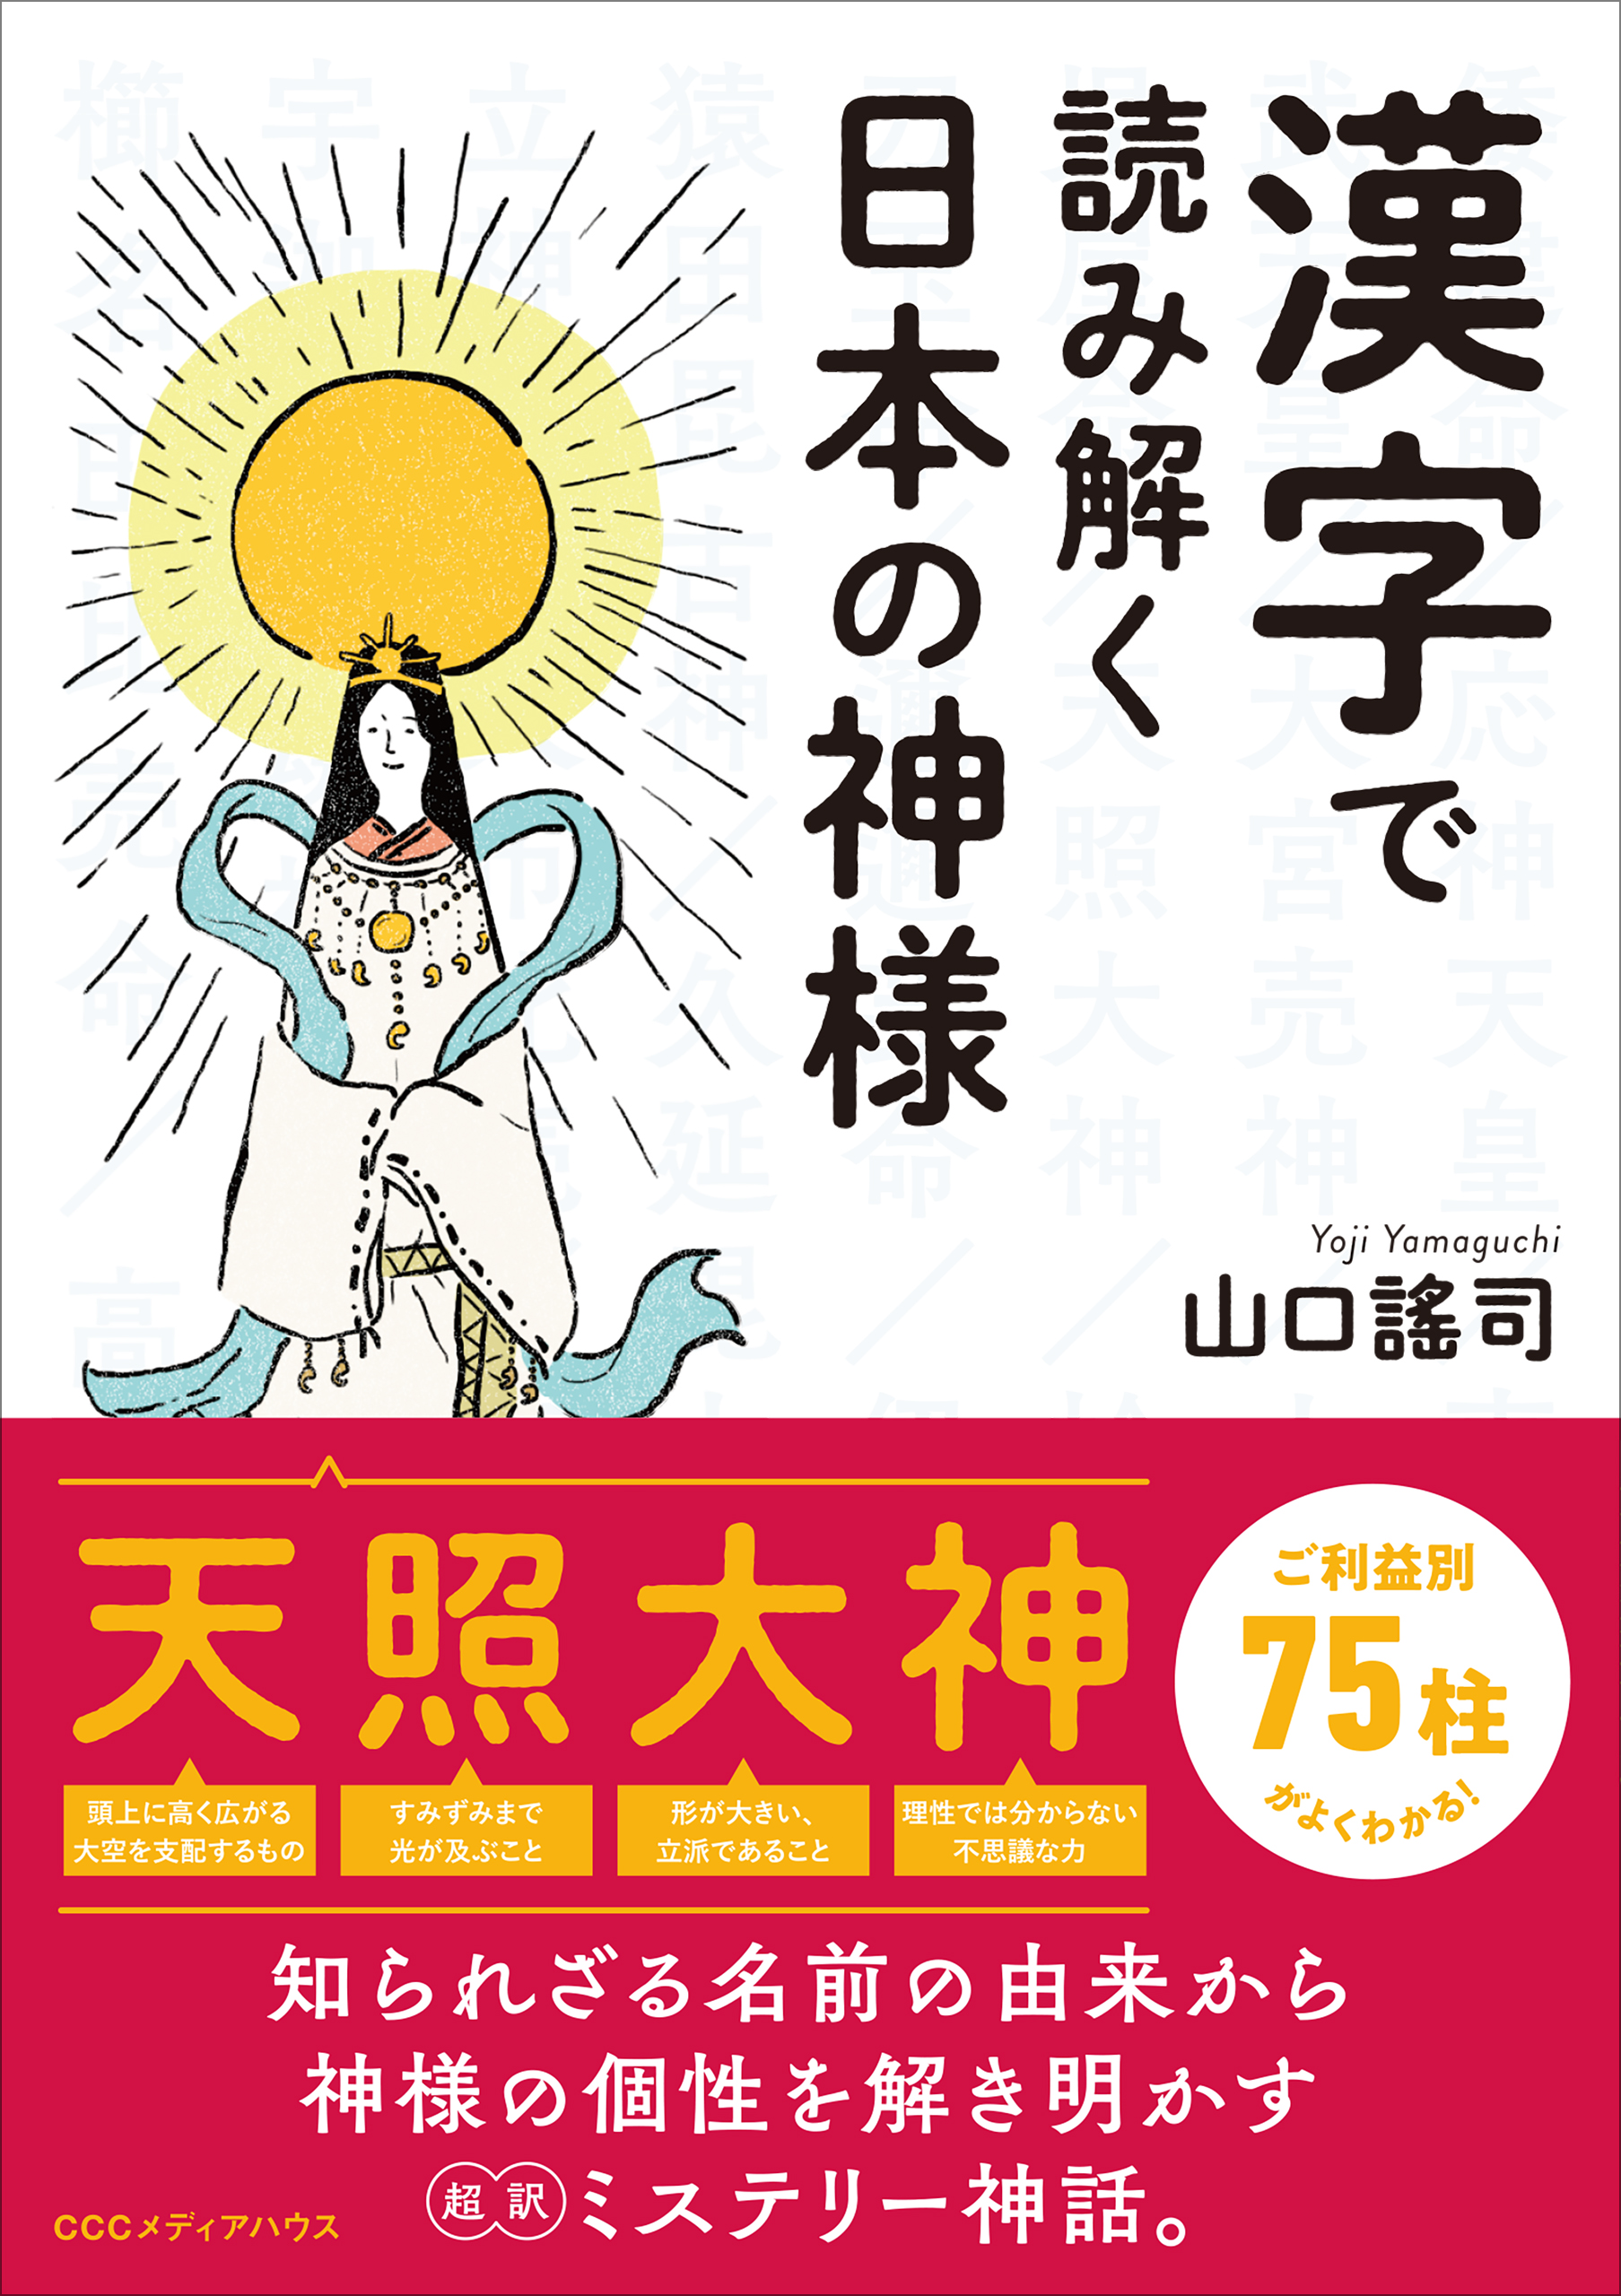 神様の名前に使われている漢字の意味や成り立ちを読み解くことで 神様たちの本当の姿が見えてくる 漢字 で読み解く日本の神様 発売 Cccメディアハウスのプレスリリース